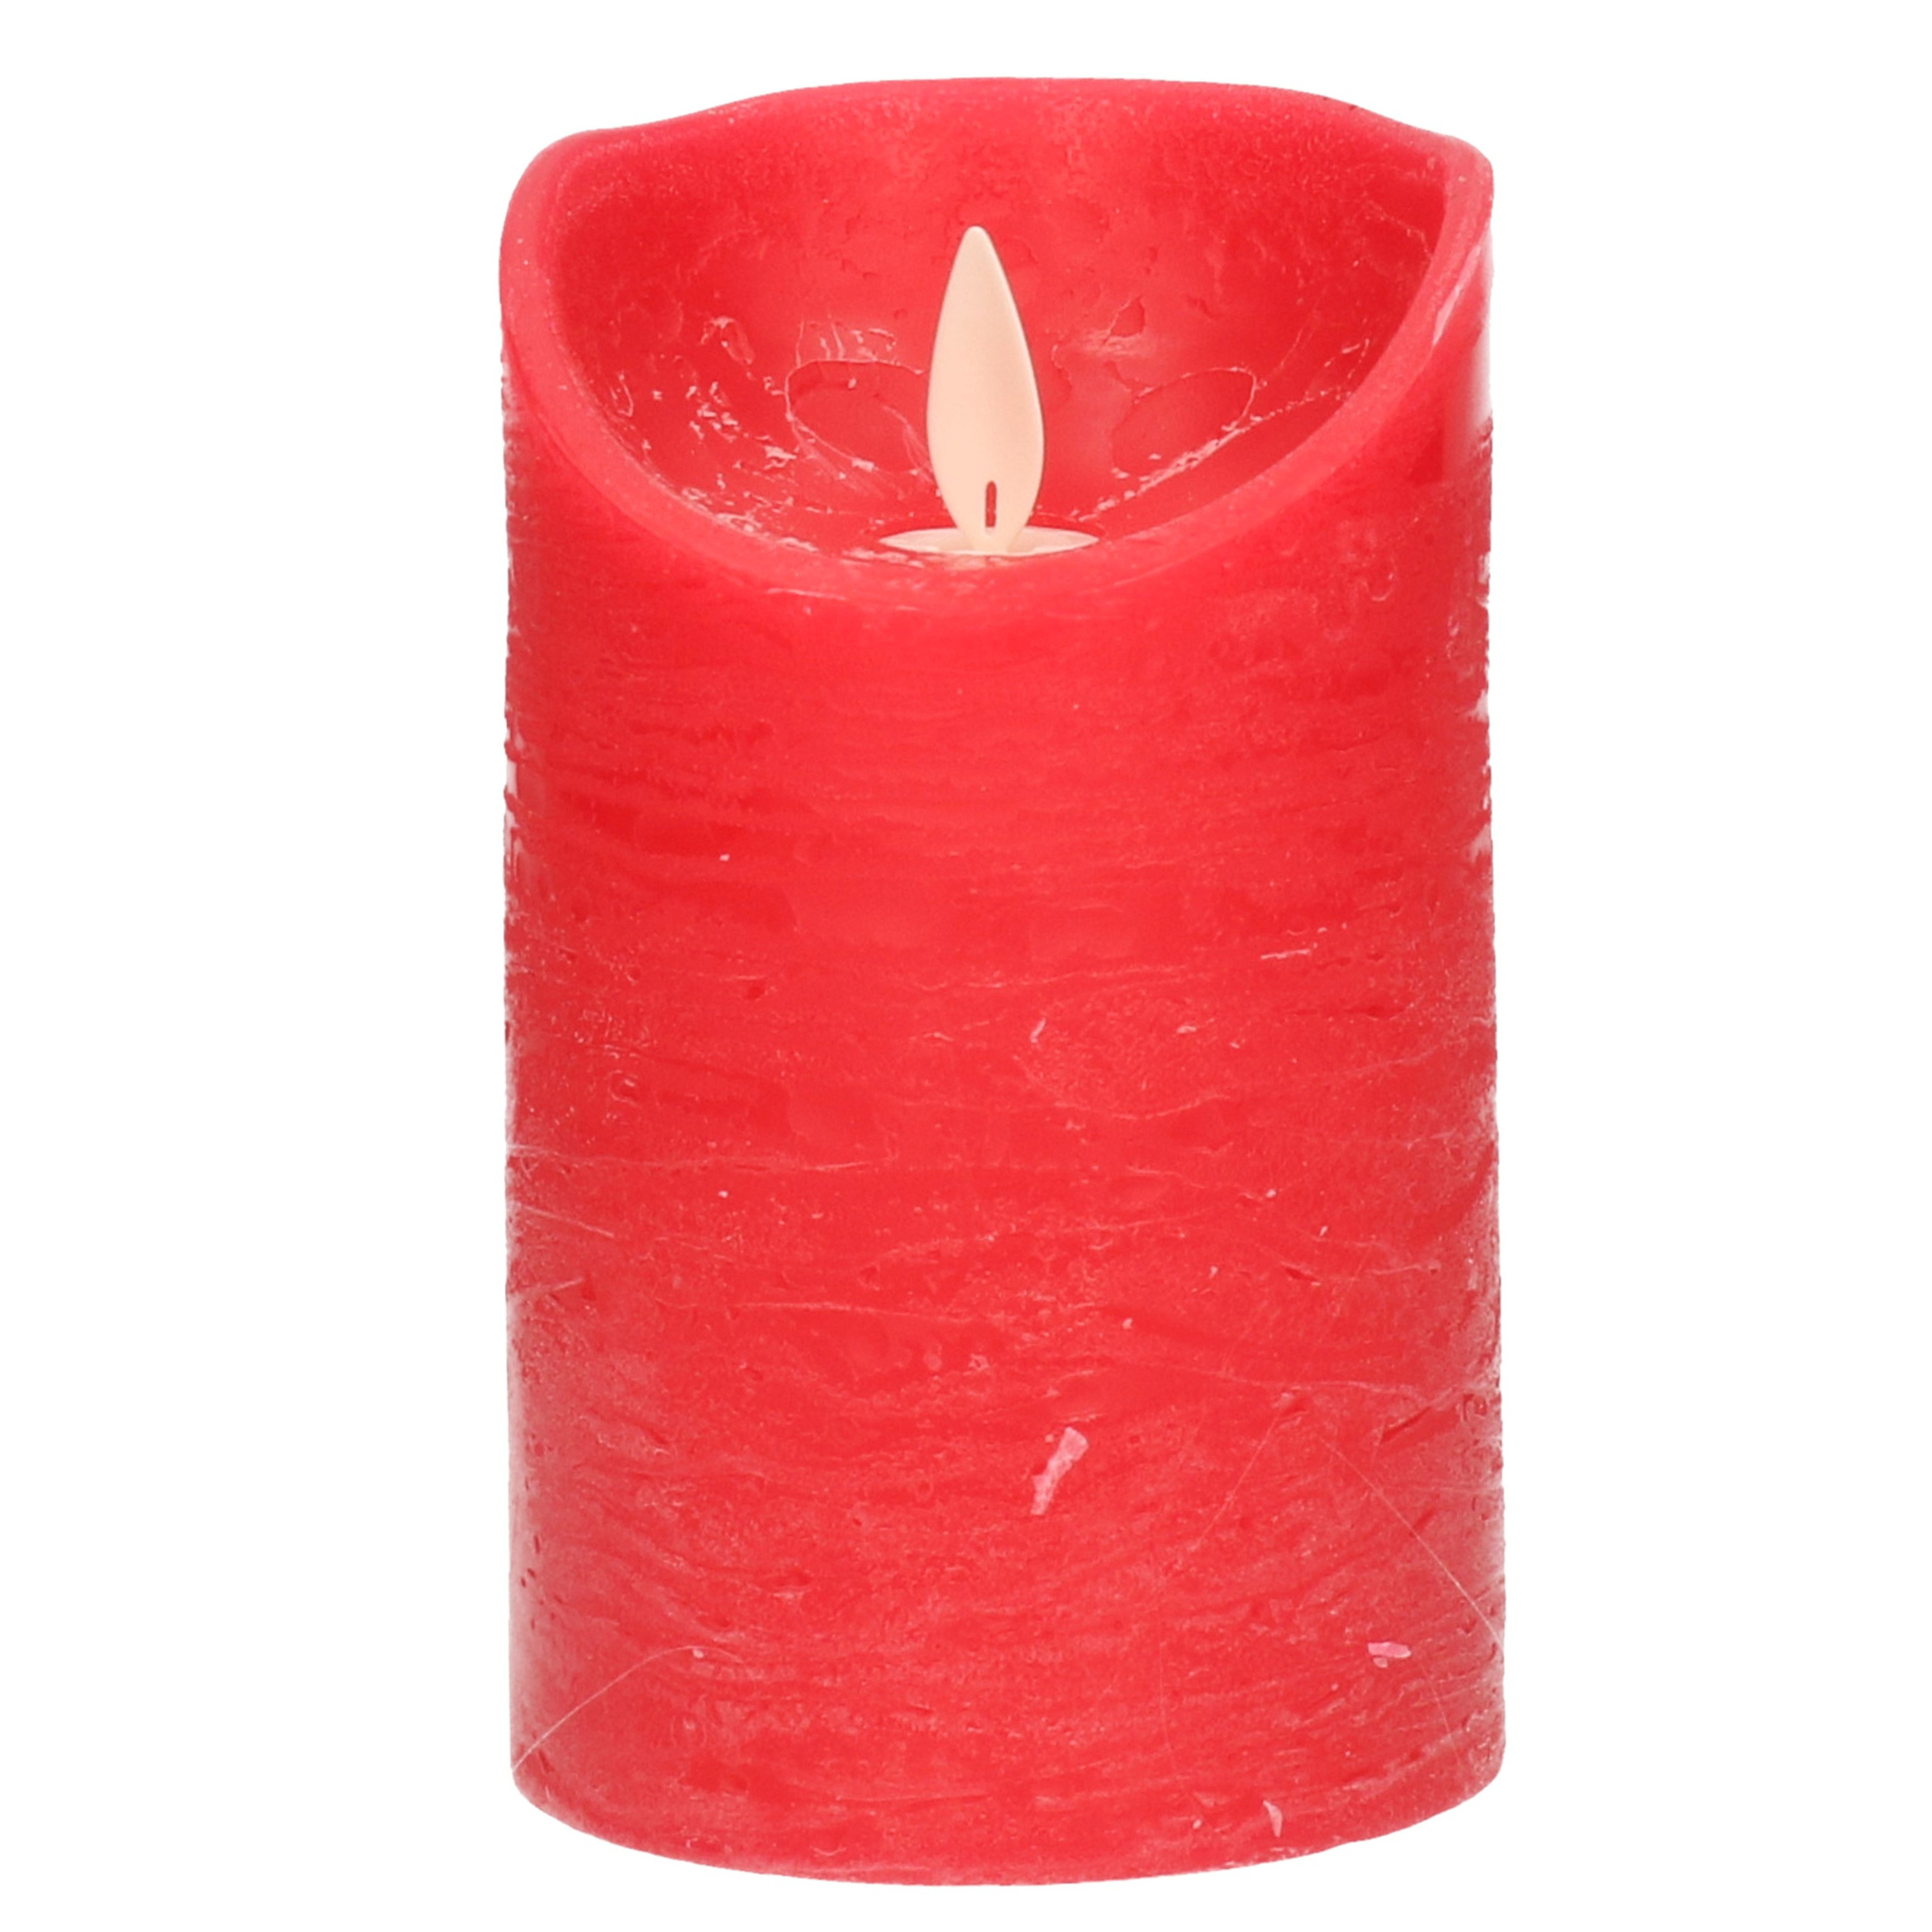 1x Rode LED kaarsen / stompkaarsen met bewegende vlam 12,5 cm